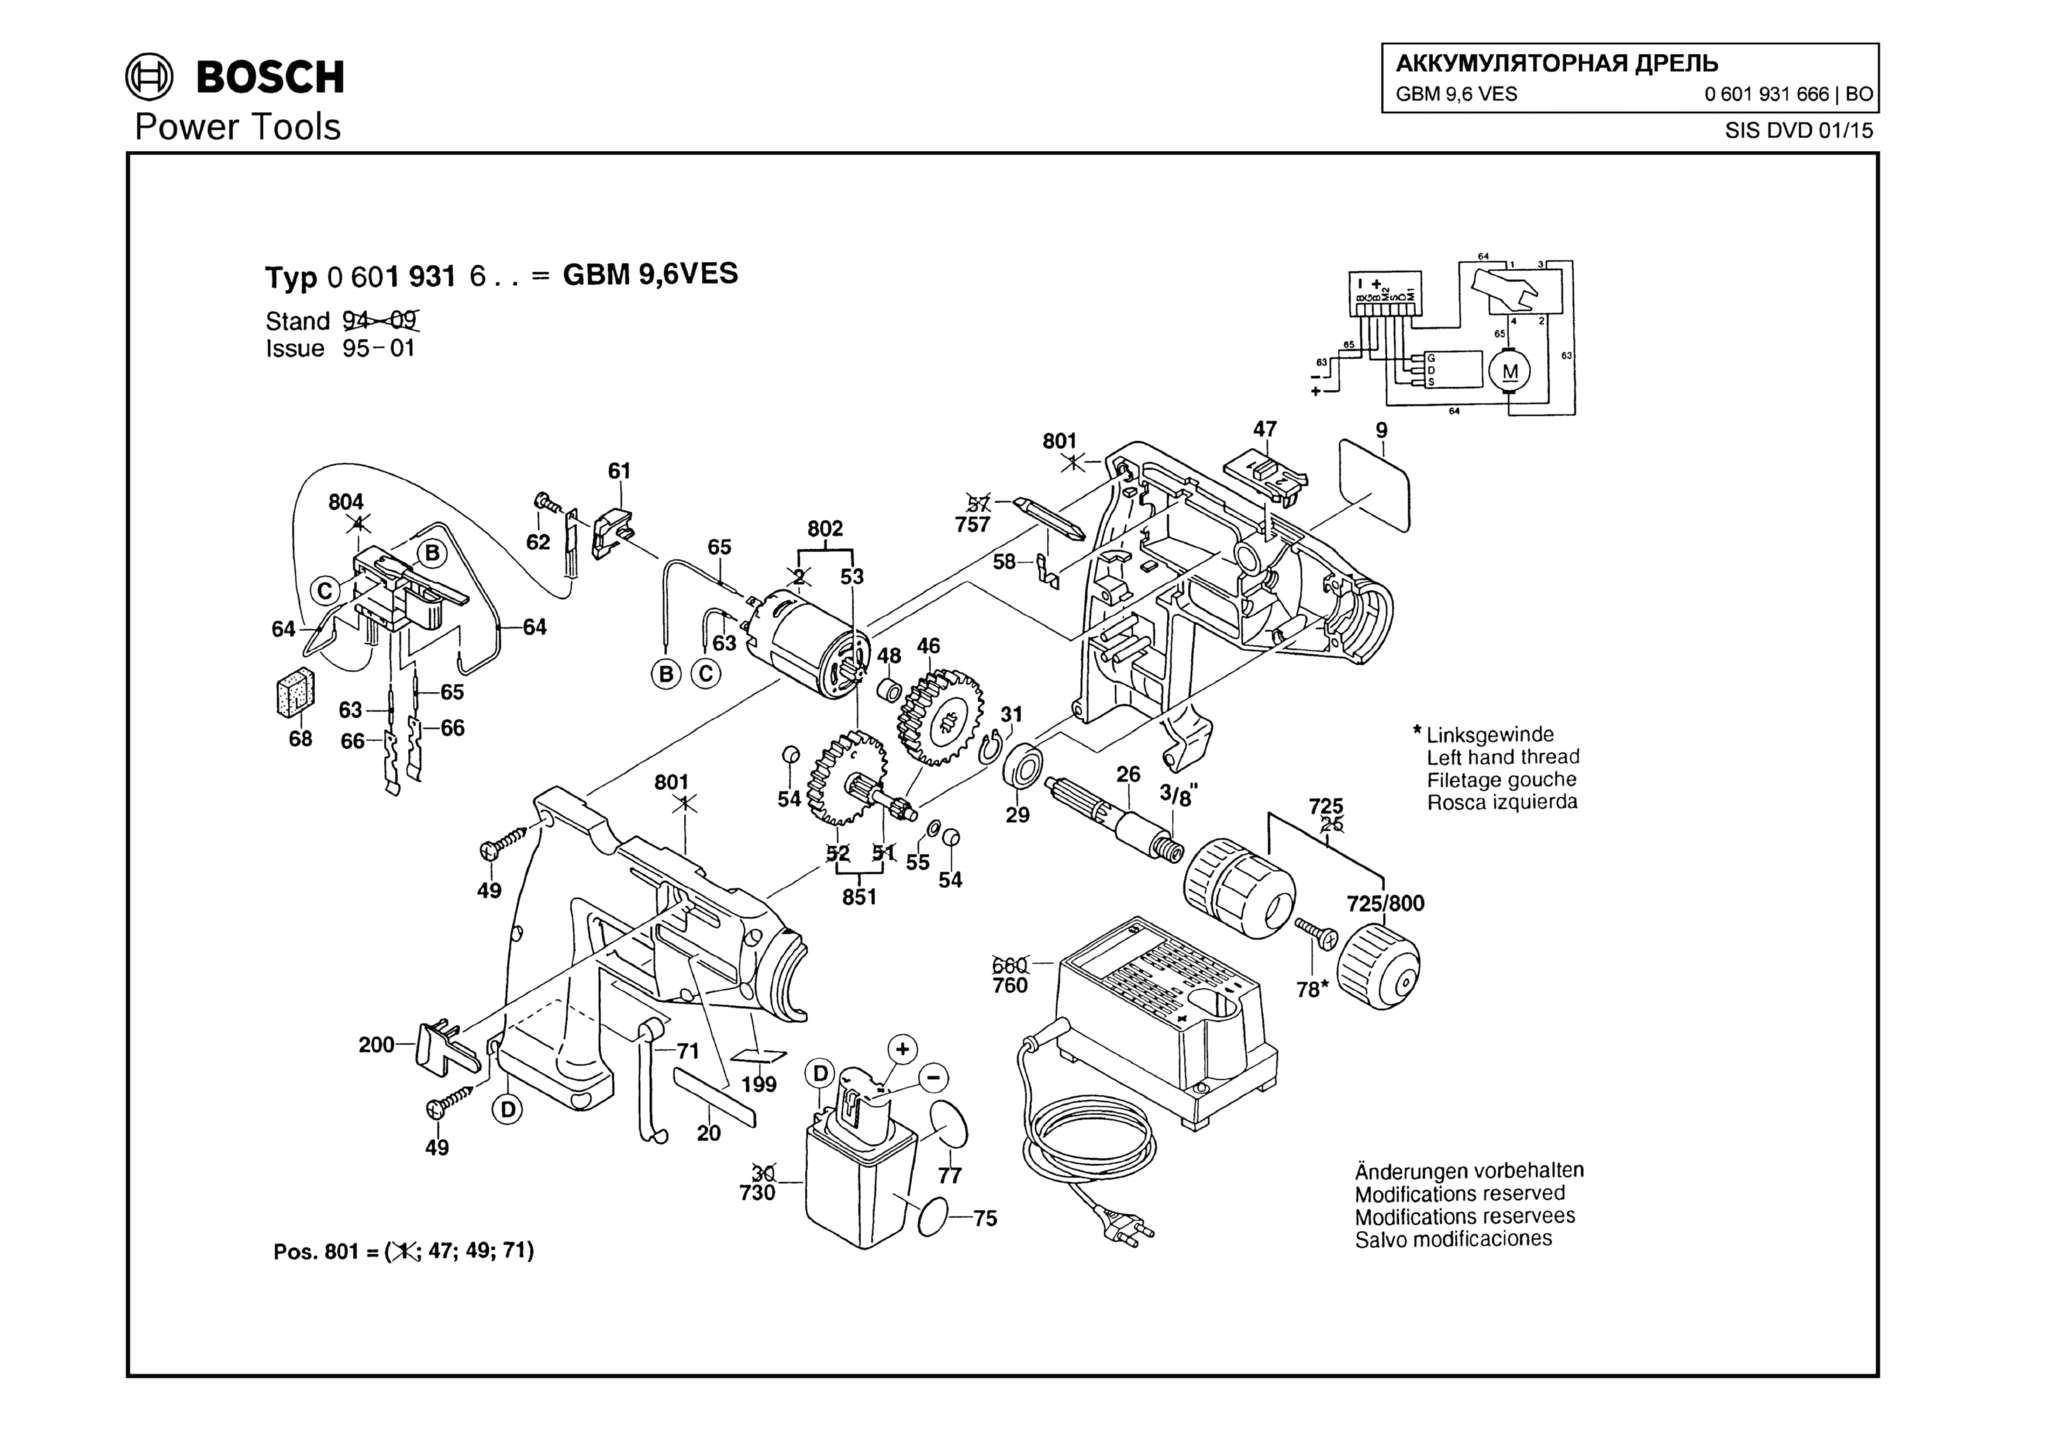 Запчасти, схема и деталировка Bosch GBM 9,6 VES (ТИП 0601931666)